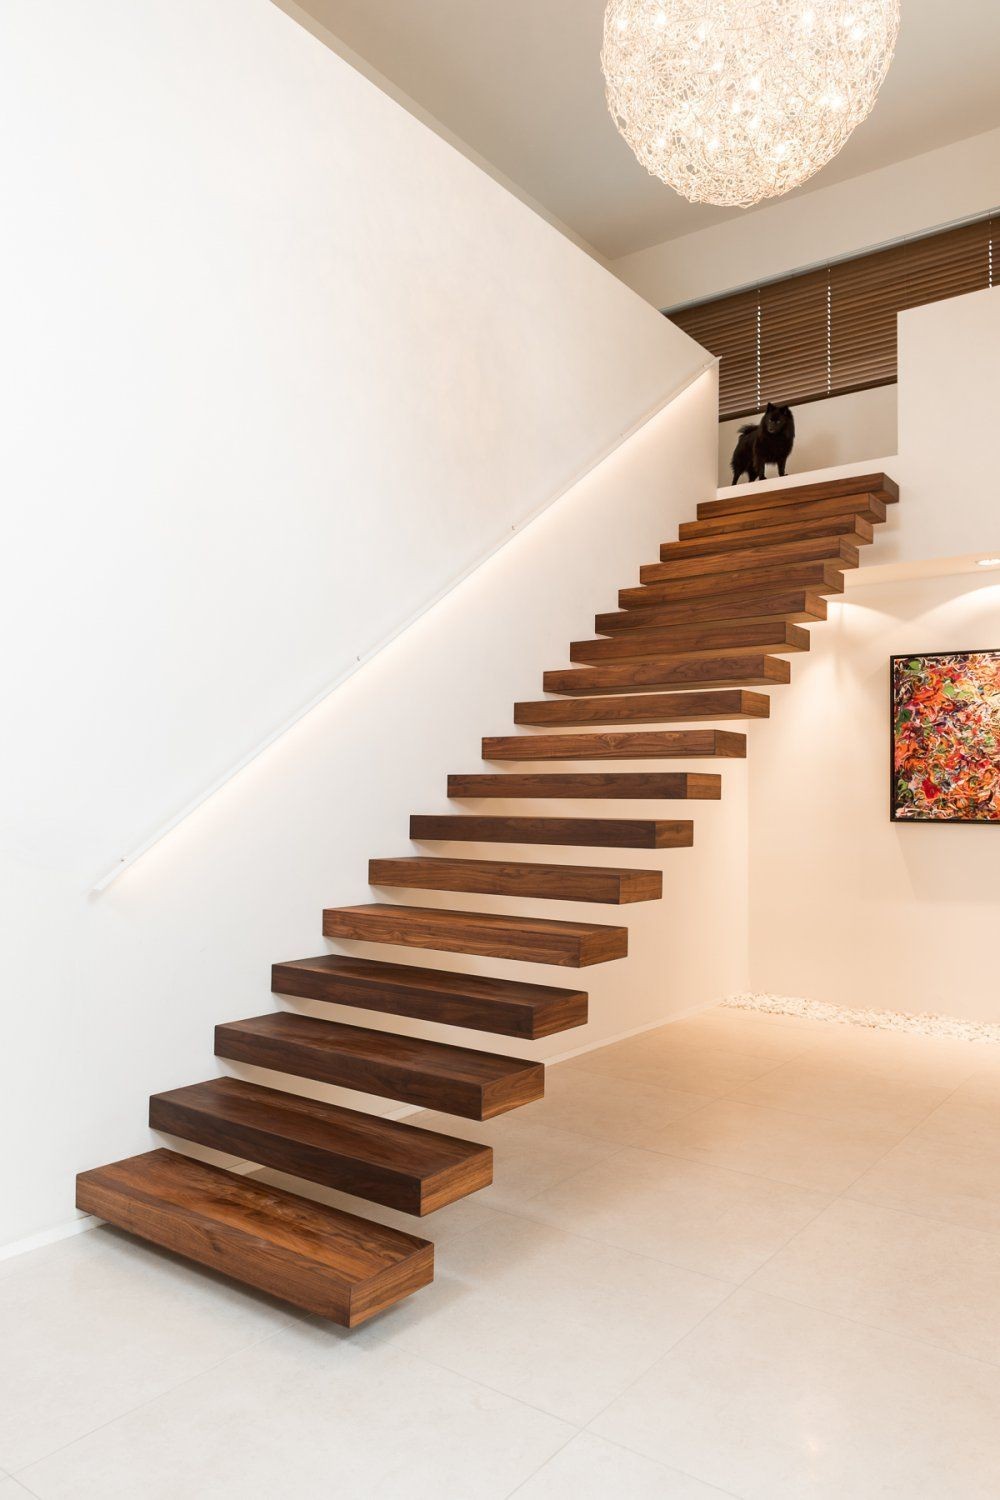 59 idées de designs d'escaliers modernes pour s'inspirer 28